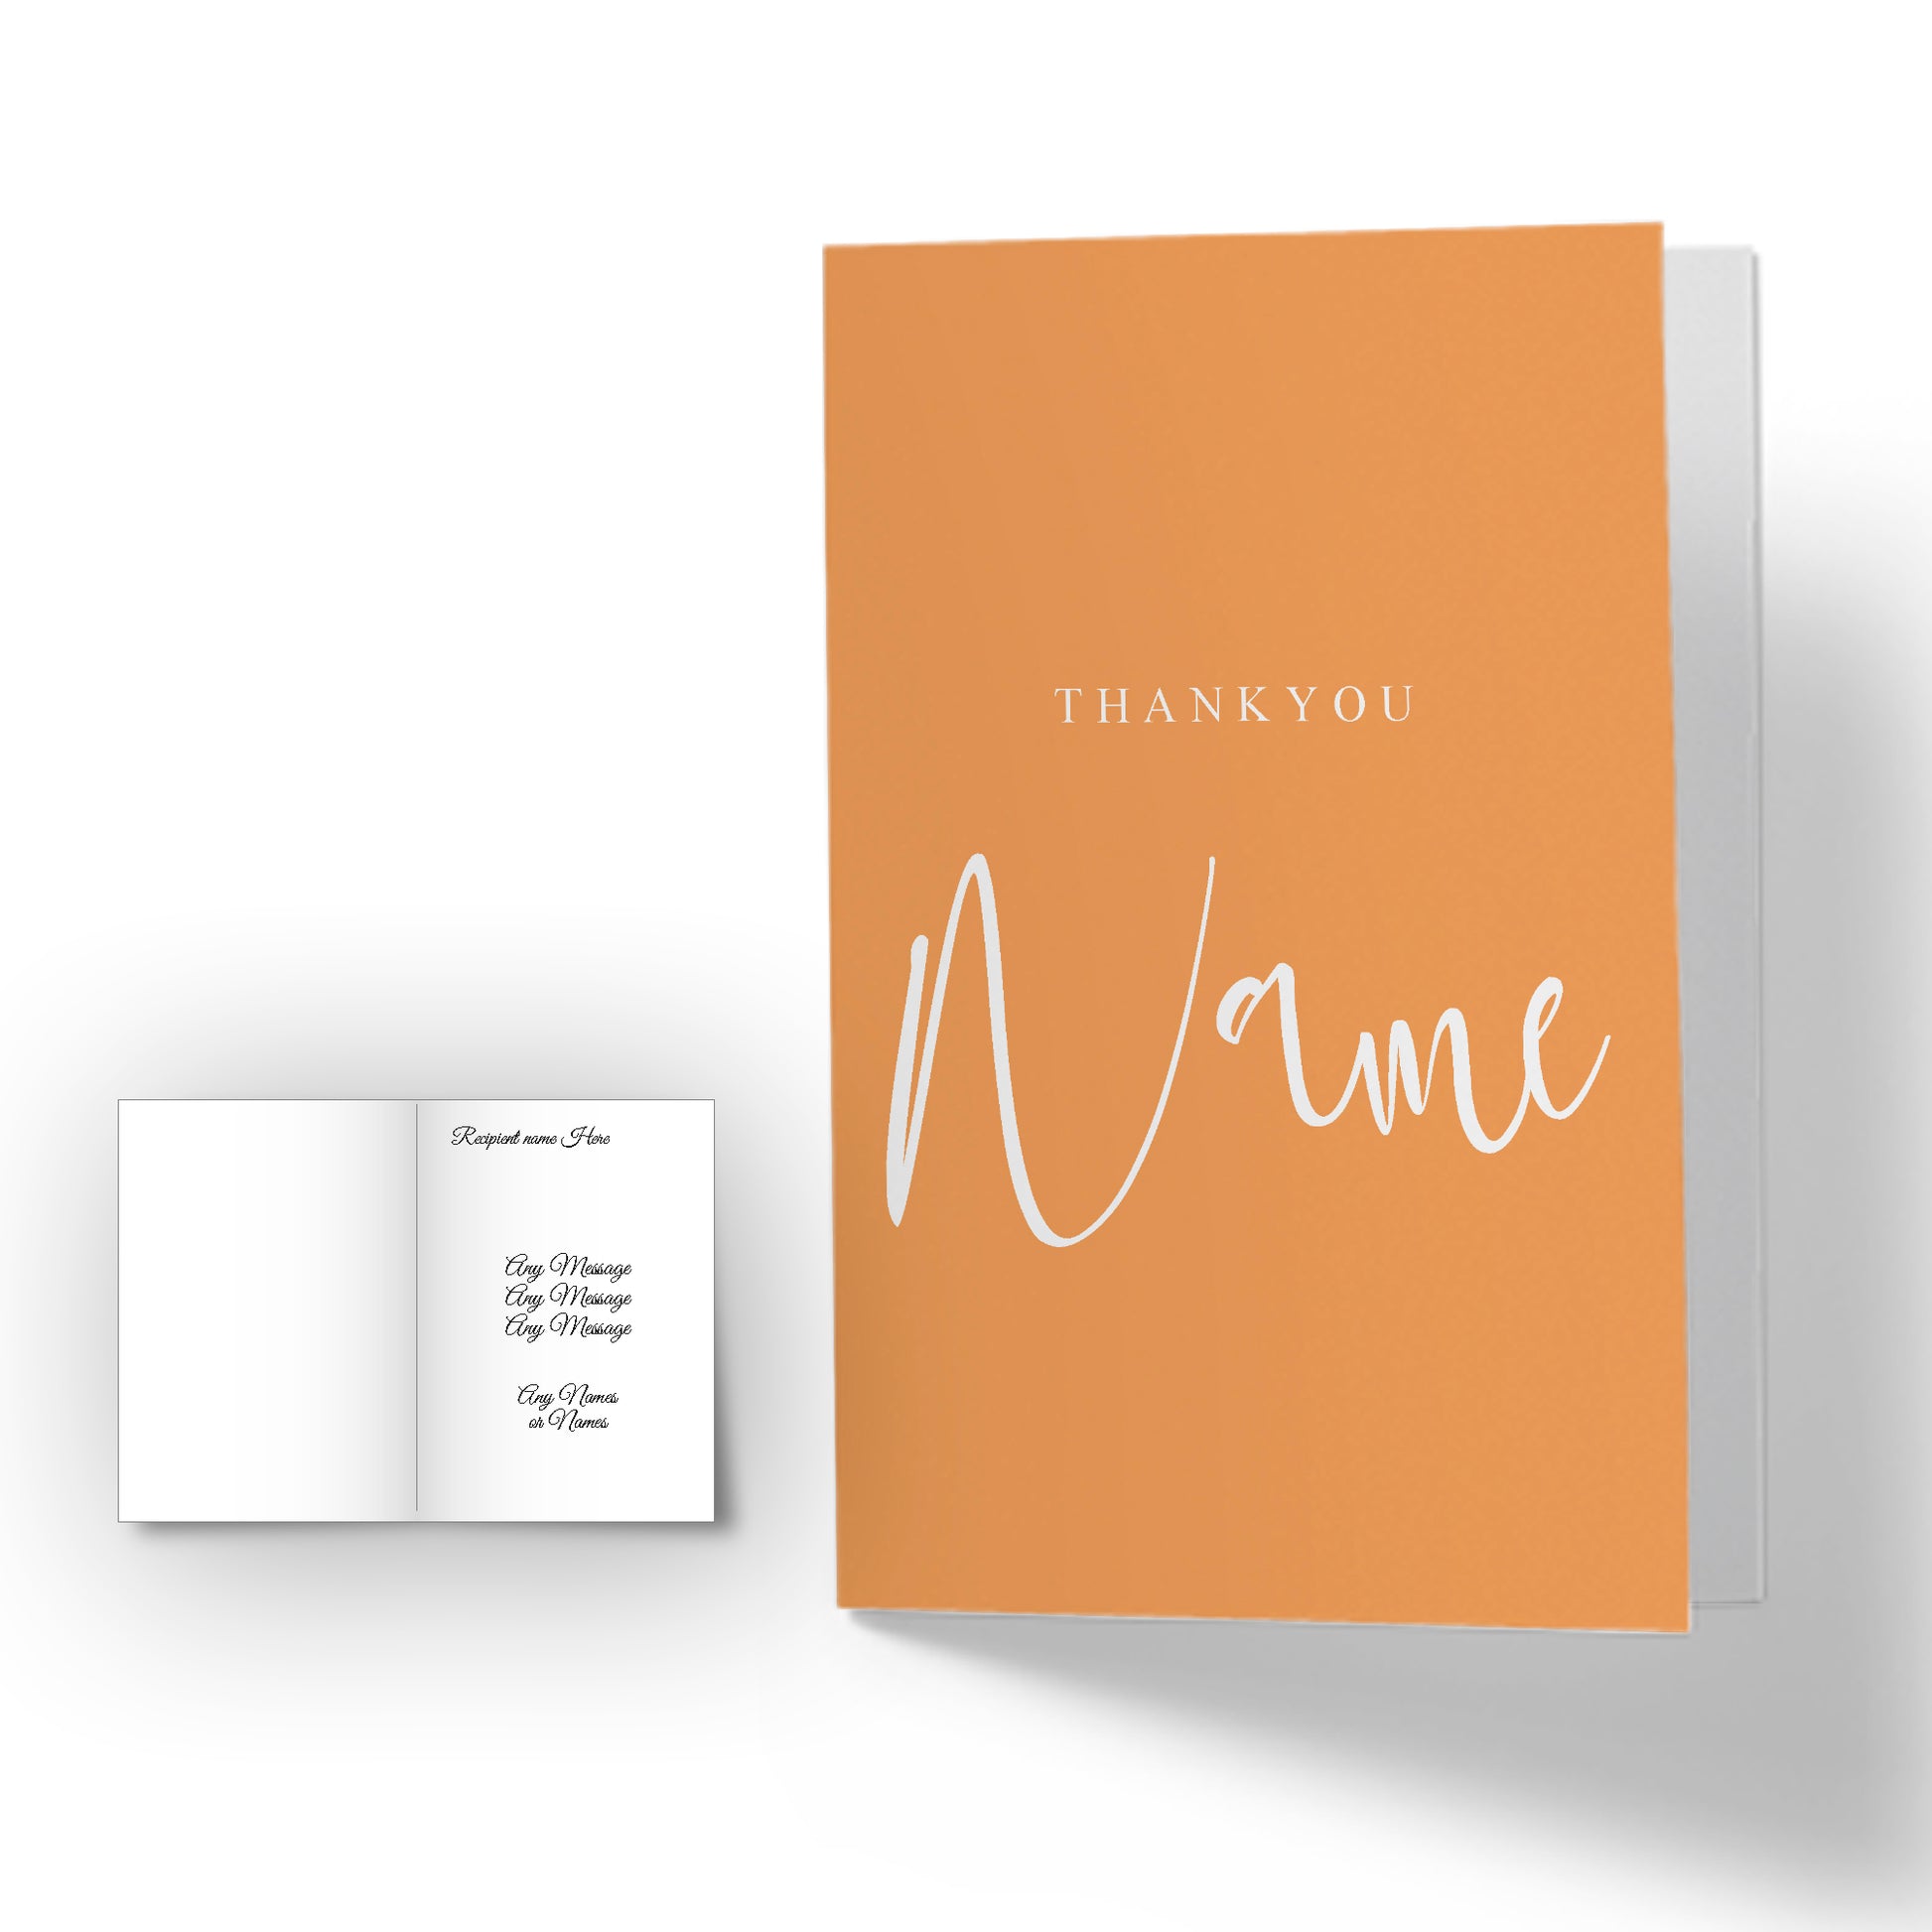 Personalised Thankyou -plus any name- Card - Orange Image 2